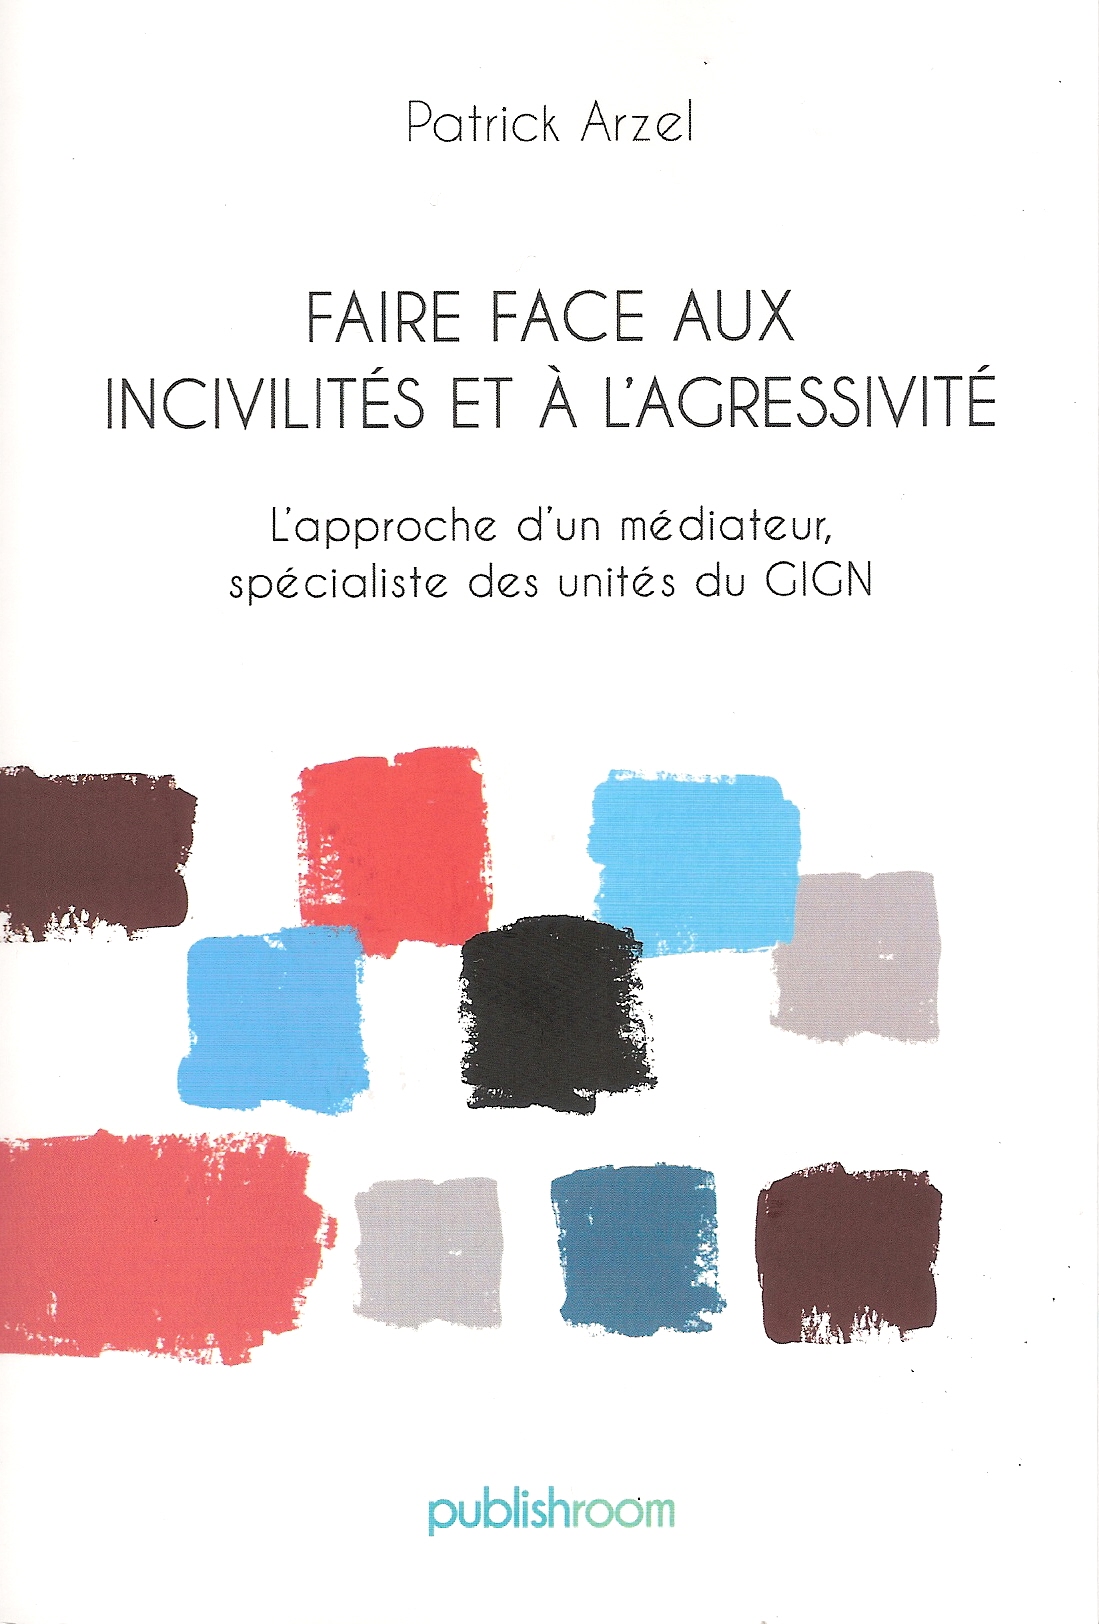 You are currently viewing Faire face aux incivilités et à l’agressivité, un livre de Patrick Arzel